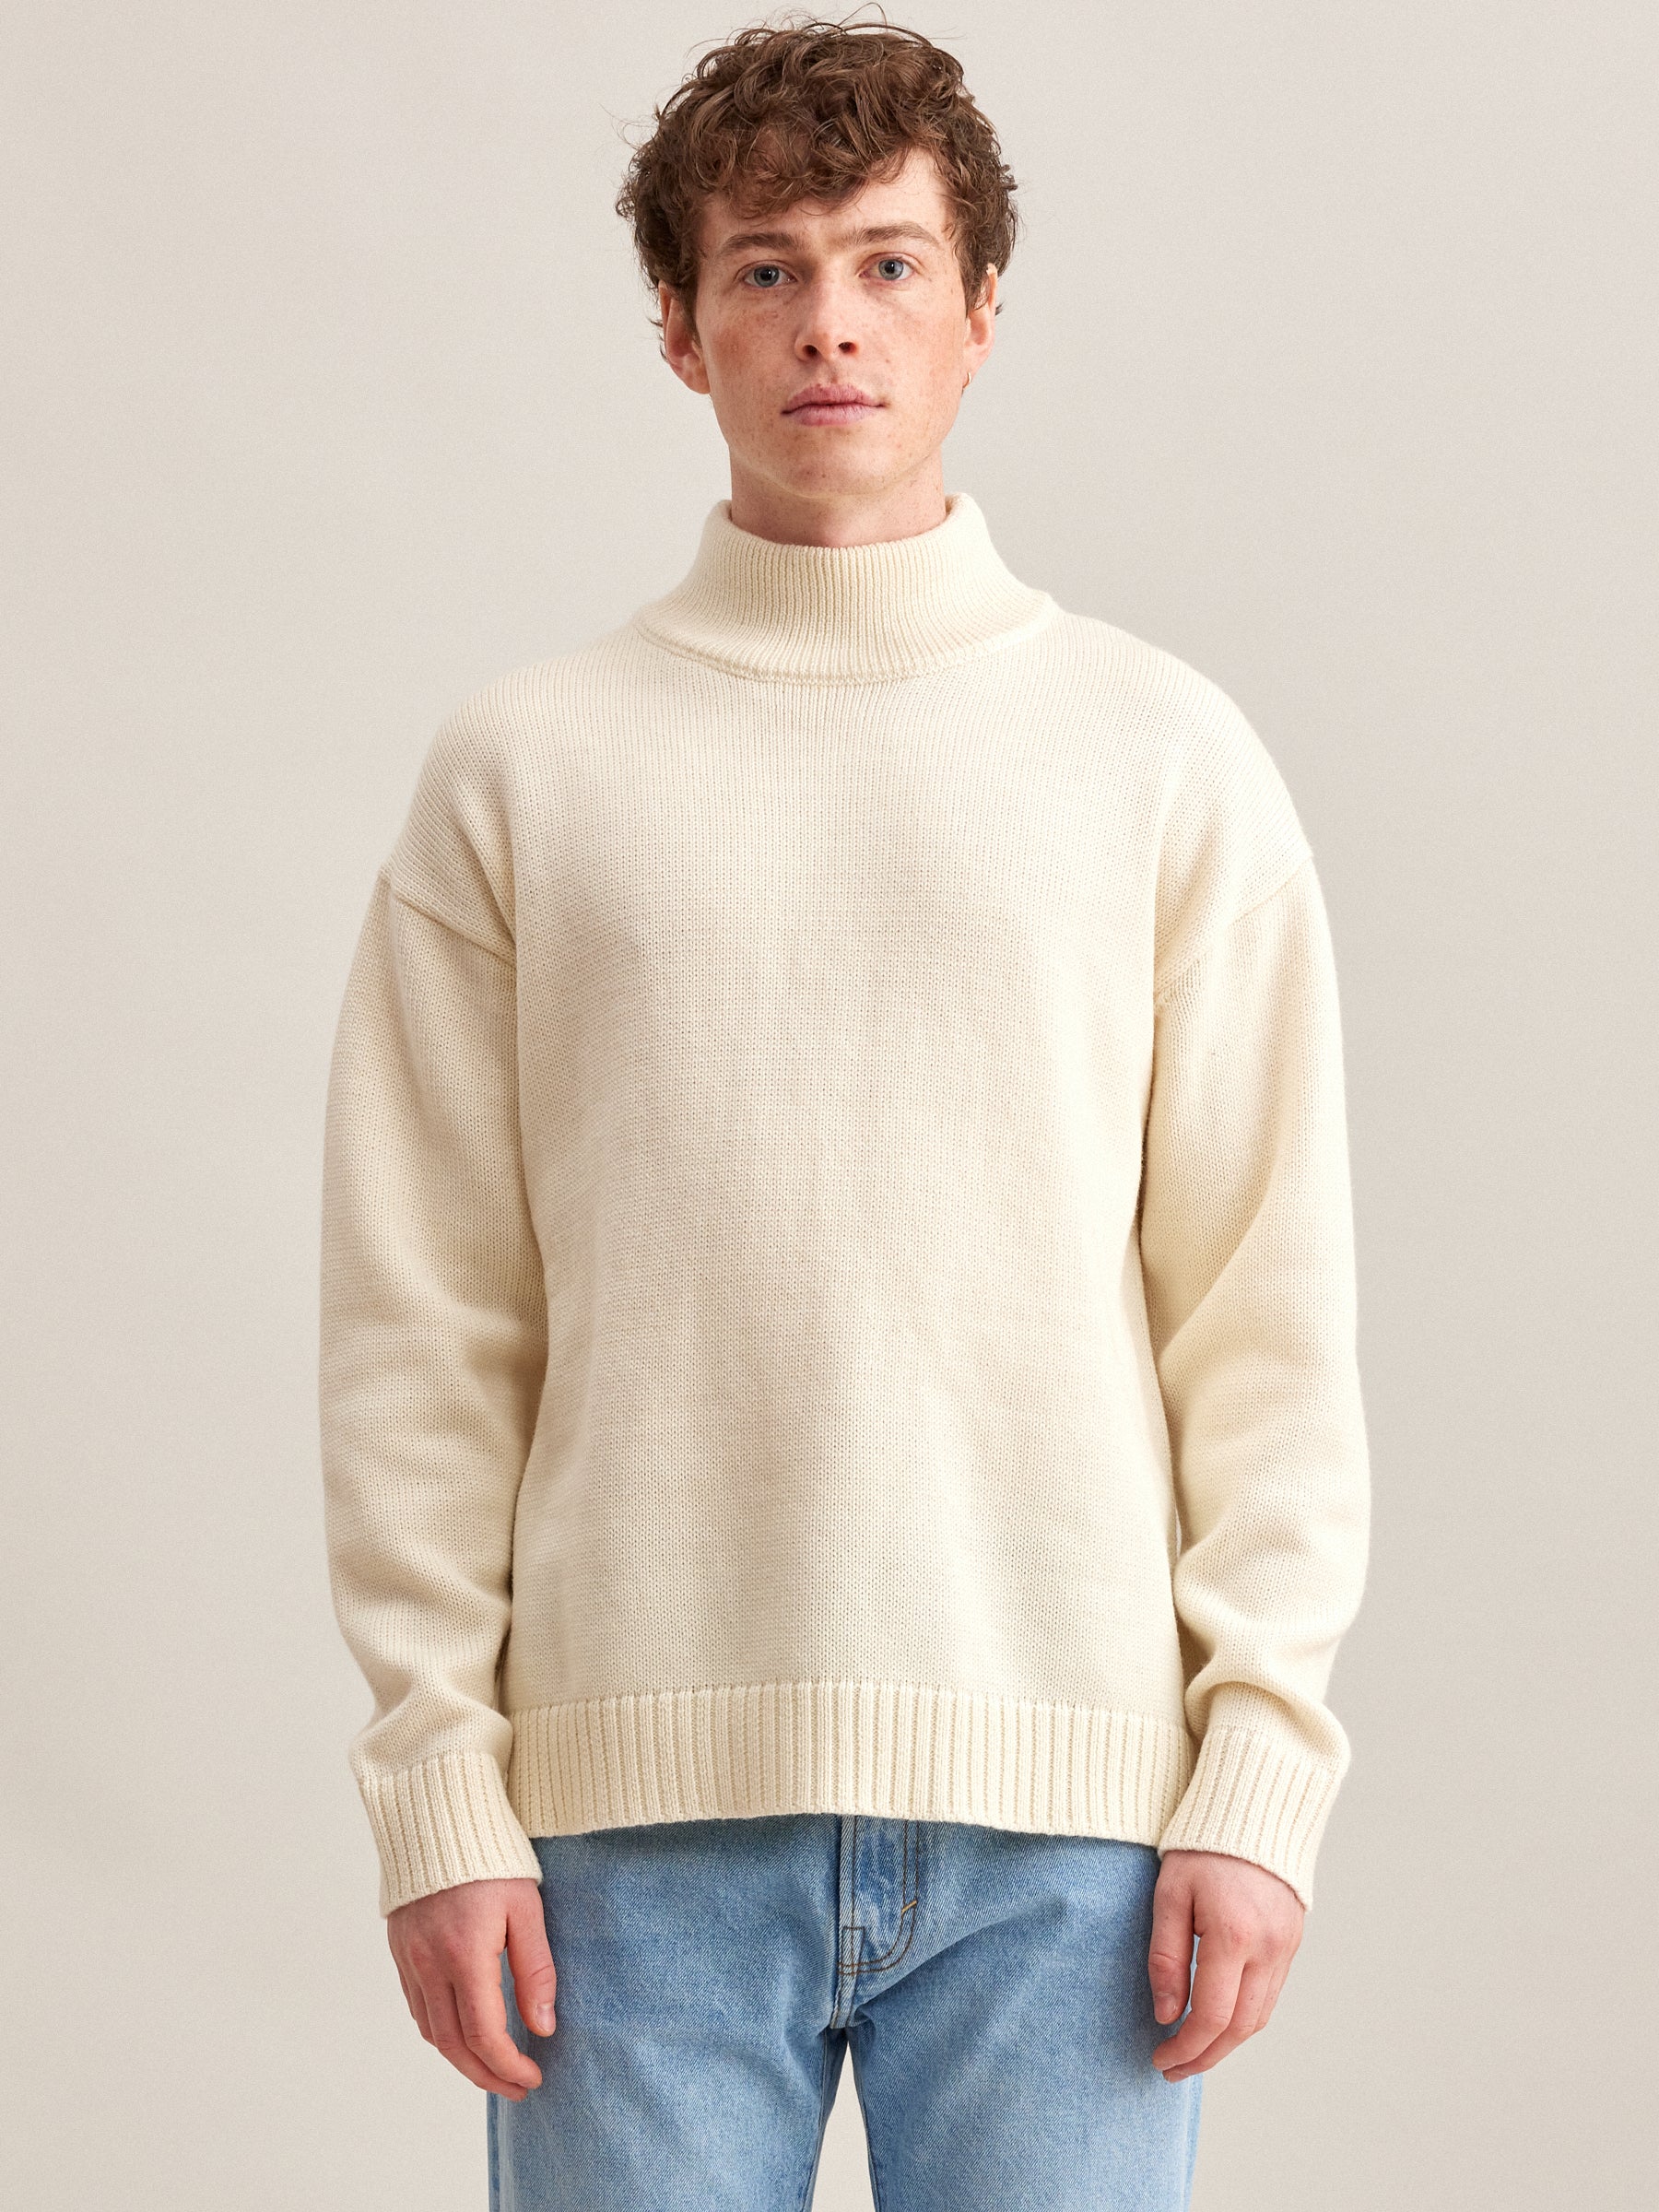 Allew sweater - White - Wool - Bellerose Men